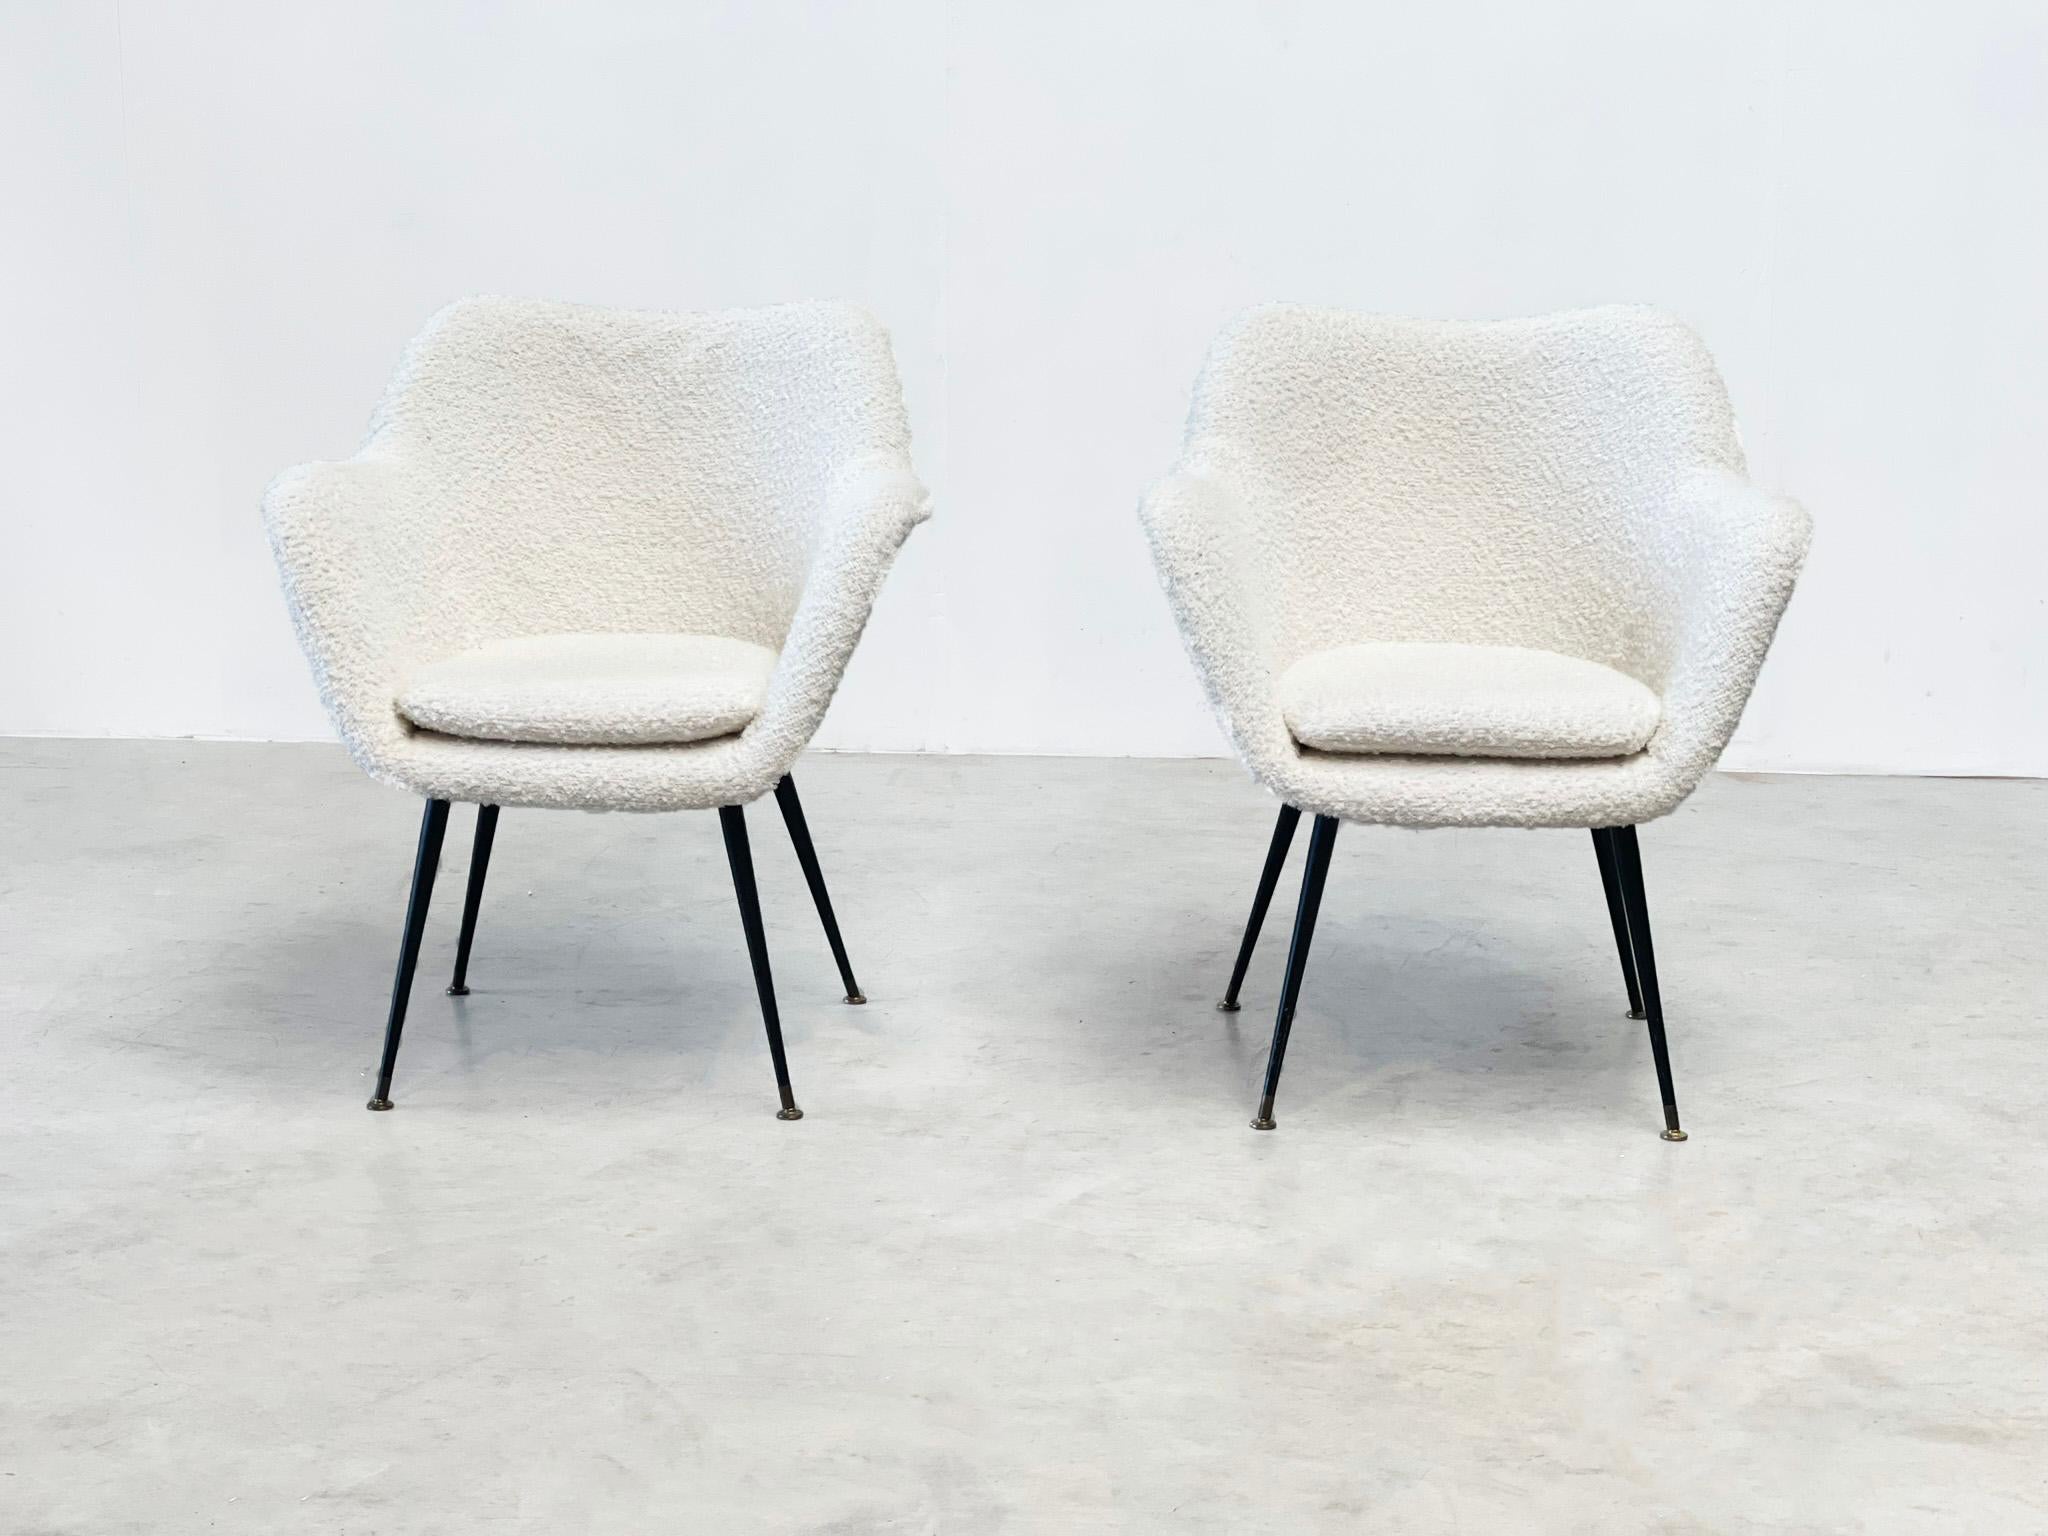 Quelle belle paire de chaises longues. Ces chaises longues ont probablement été fabriquées dans les années 1970 aux Pays-Bas. 

 

Malheureusement, nous ne pouvons pas dire avec certitude à 100 % d'où proviennent ces chaises longues. Ils sont